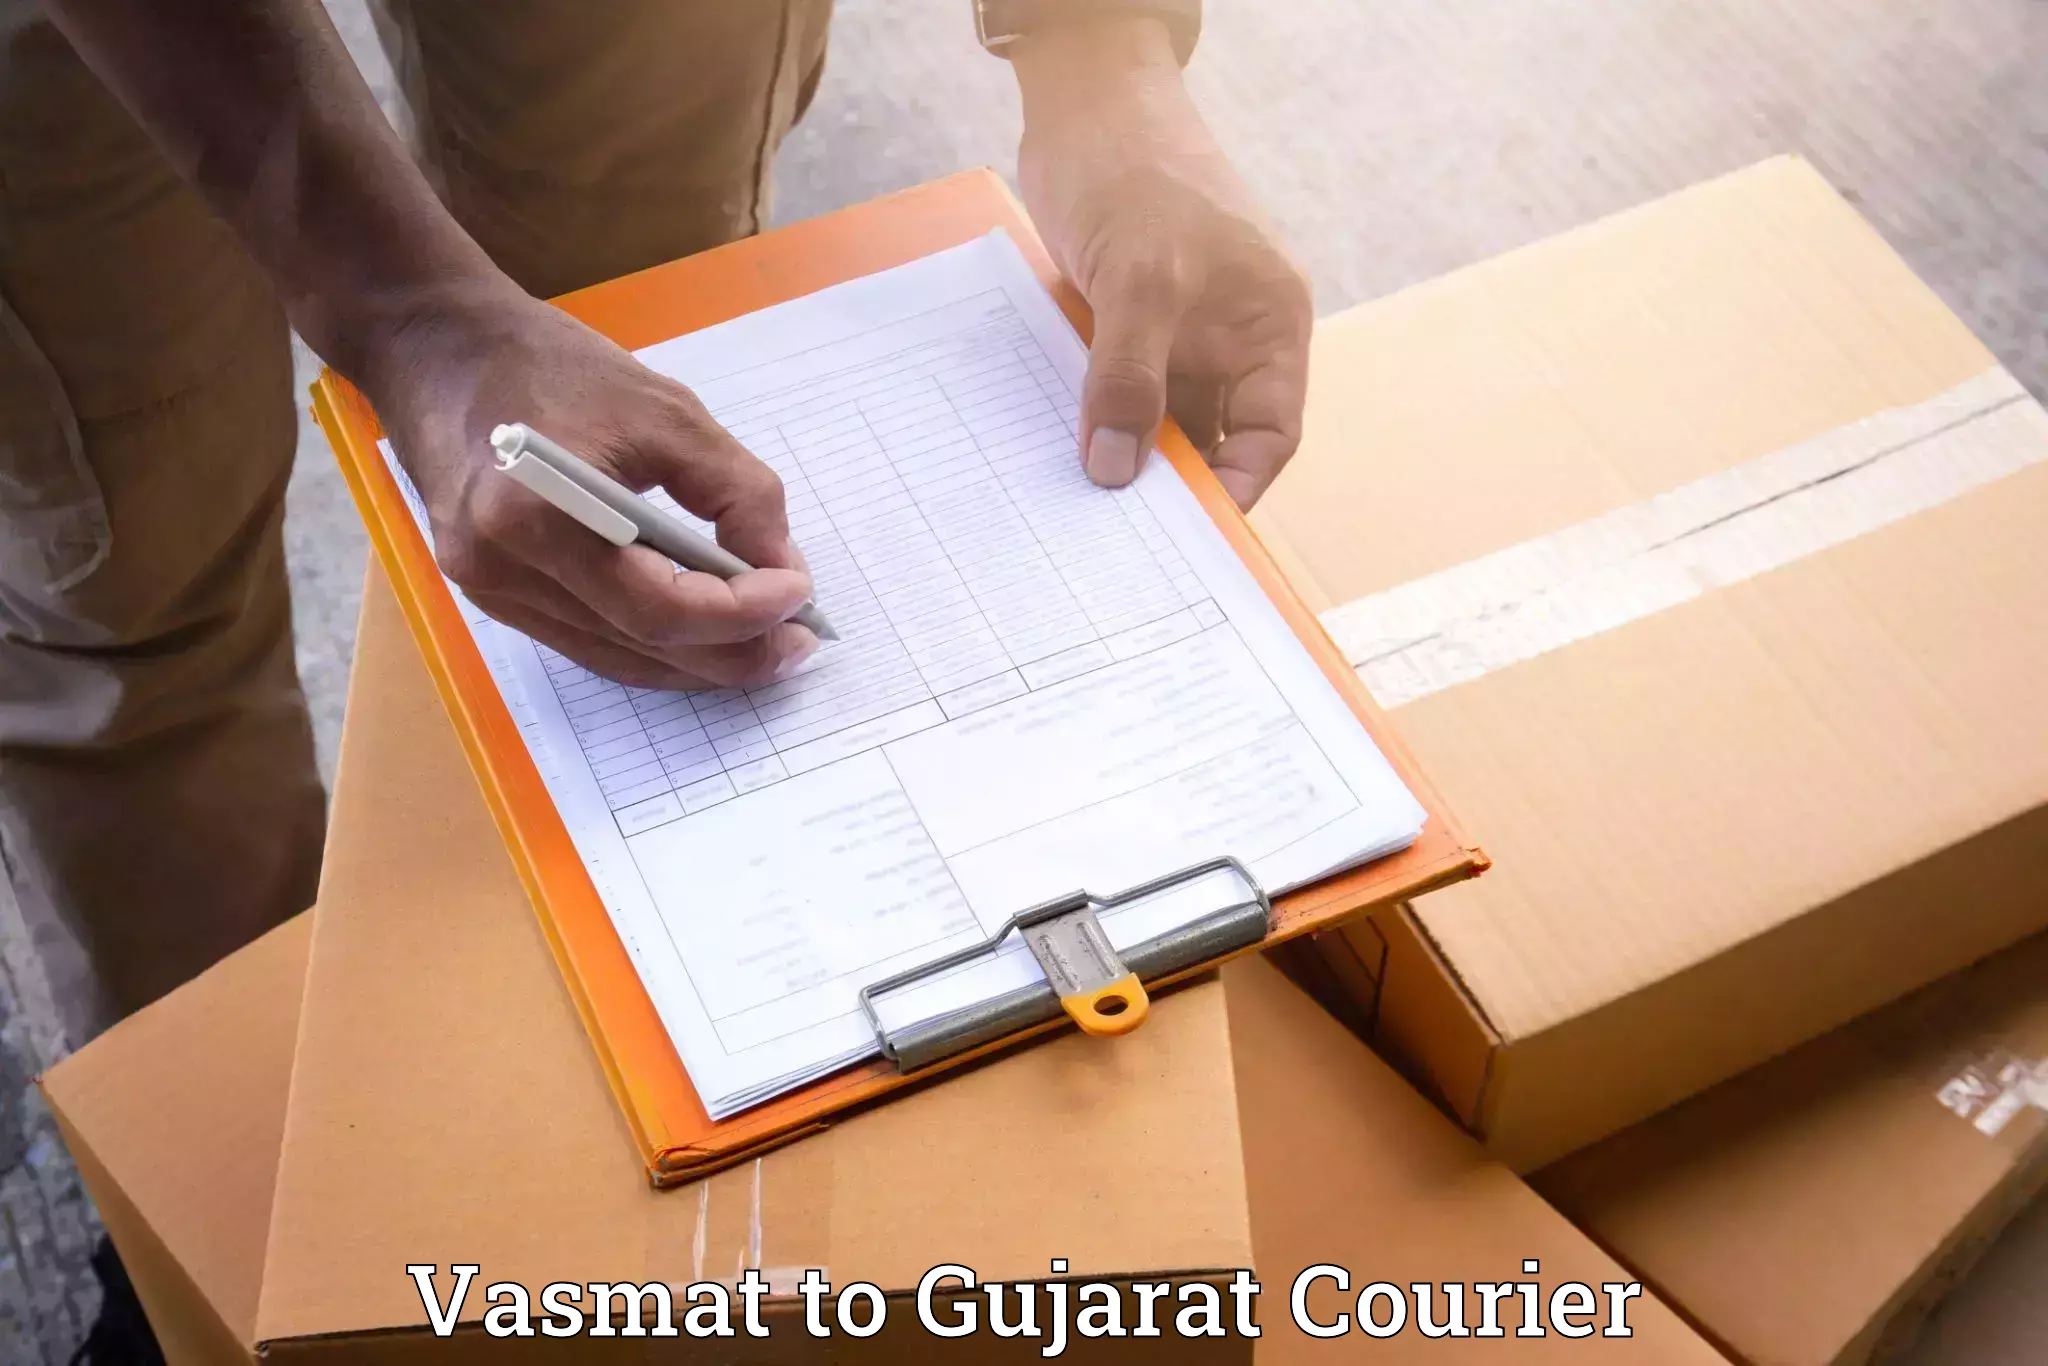 Furniture moving experts Vasmat to Junagadh